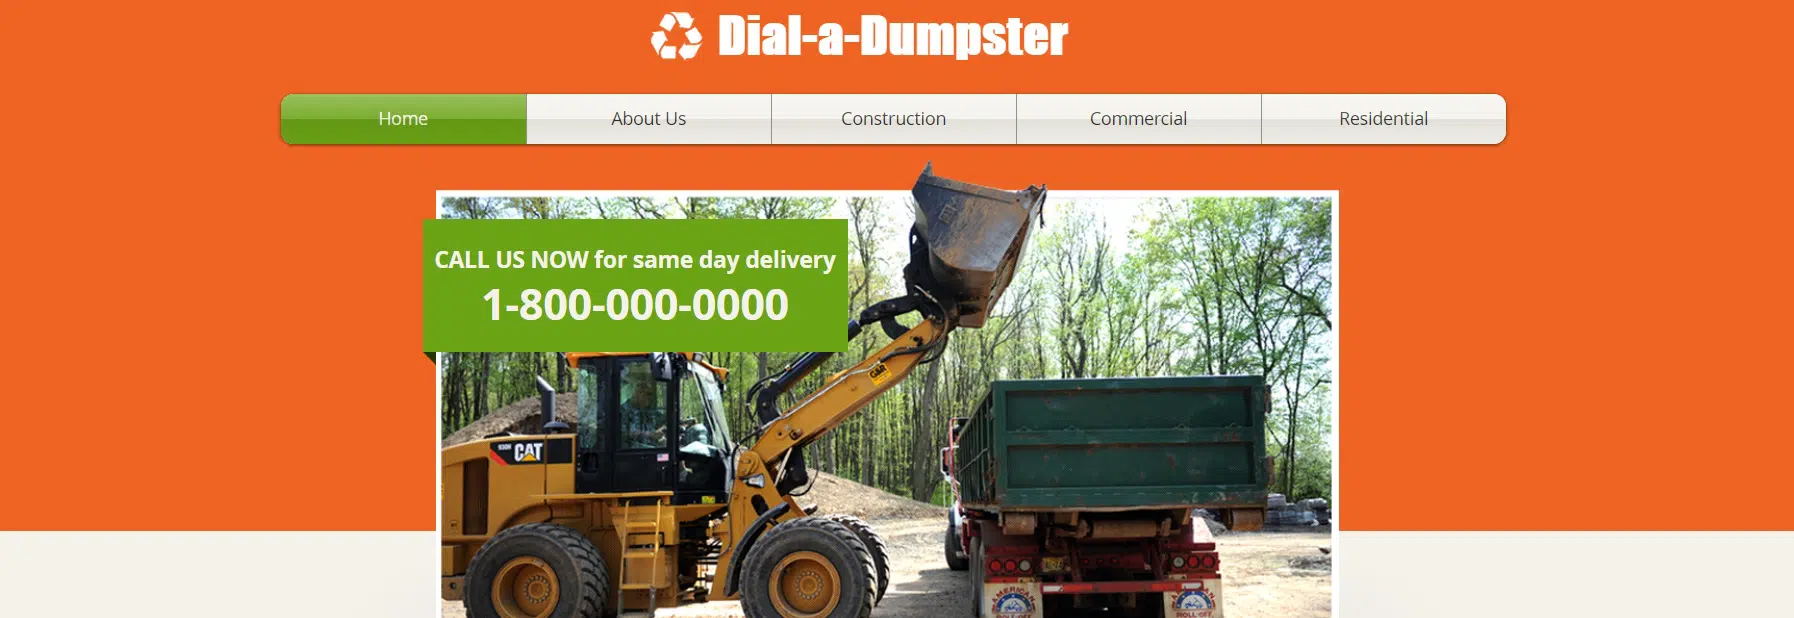 Dumpster - Construction Website  Template